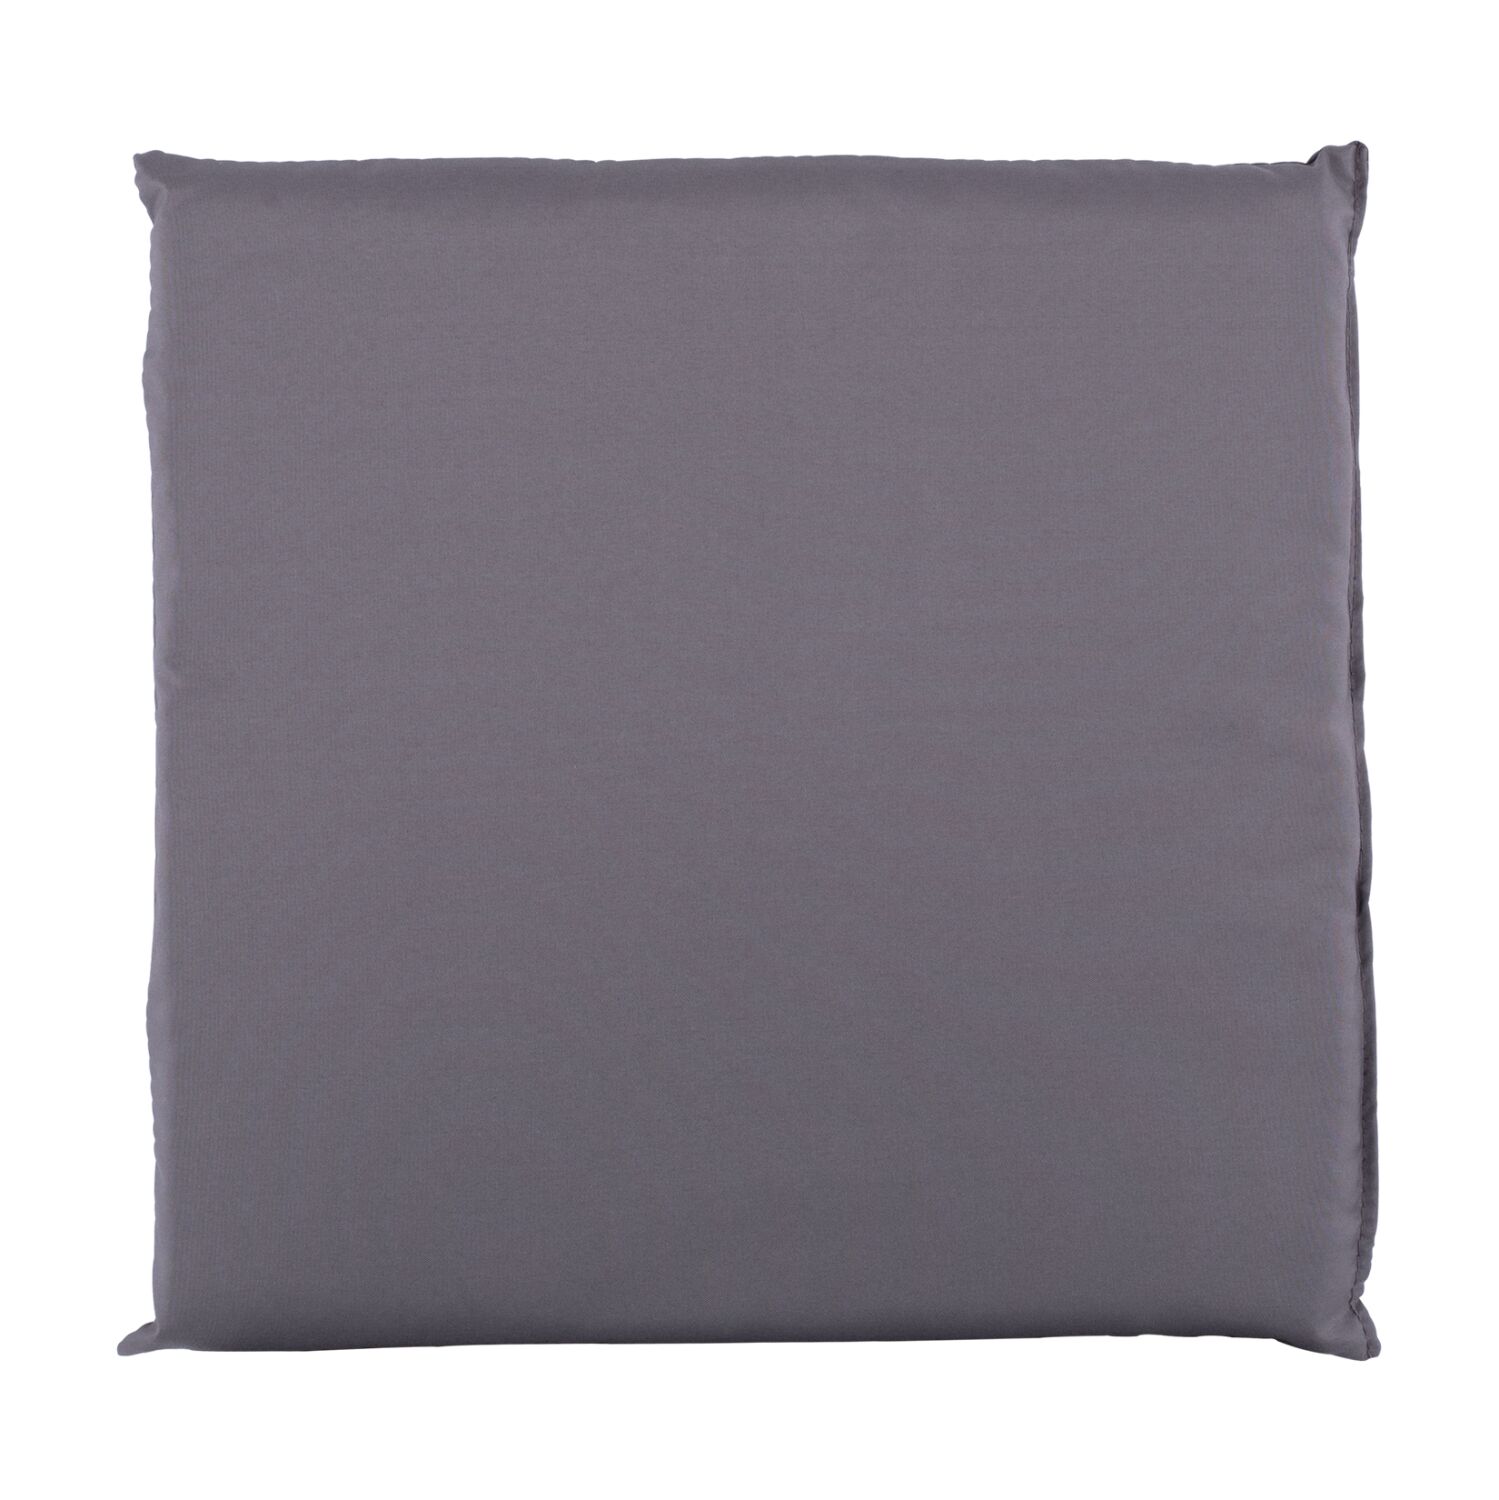 Fabric Pillow Grey 44x44x5.5 HM5746.10